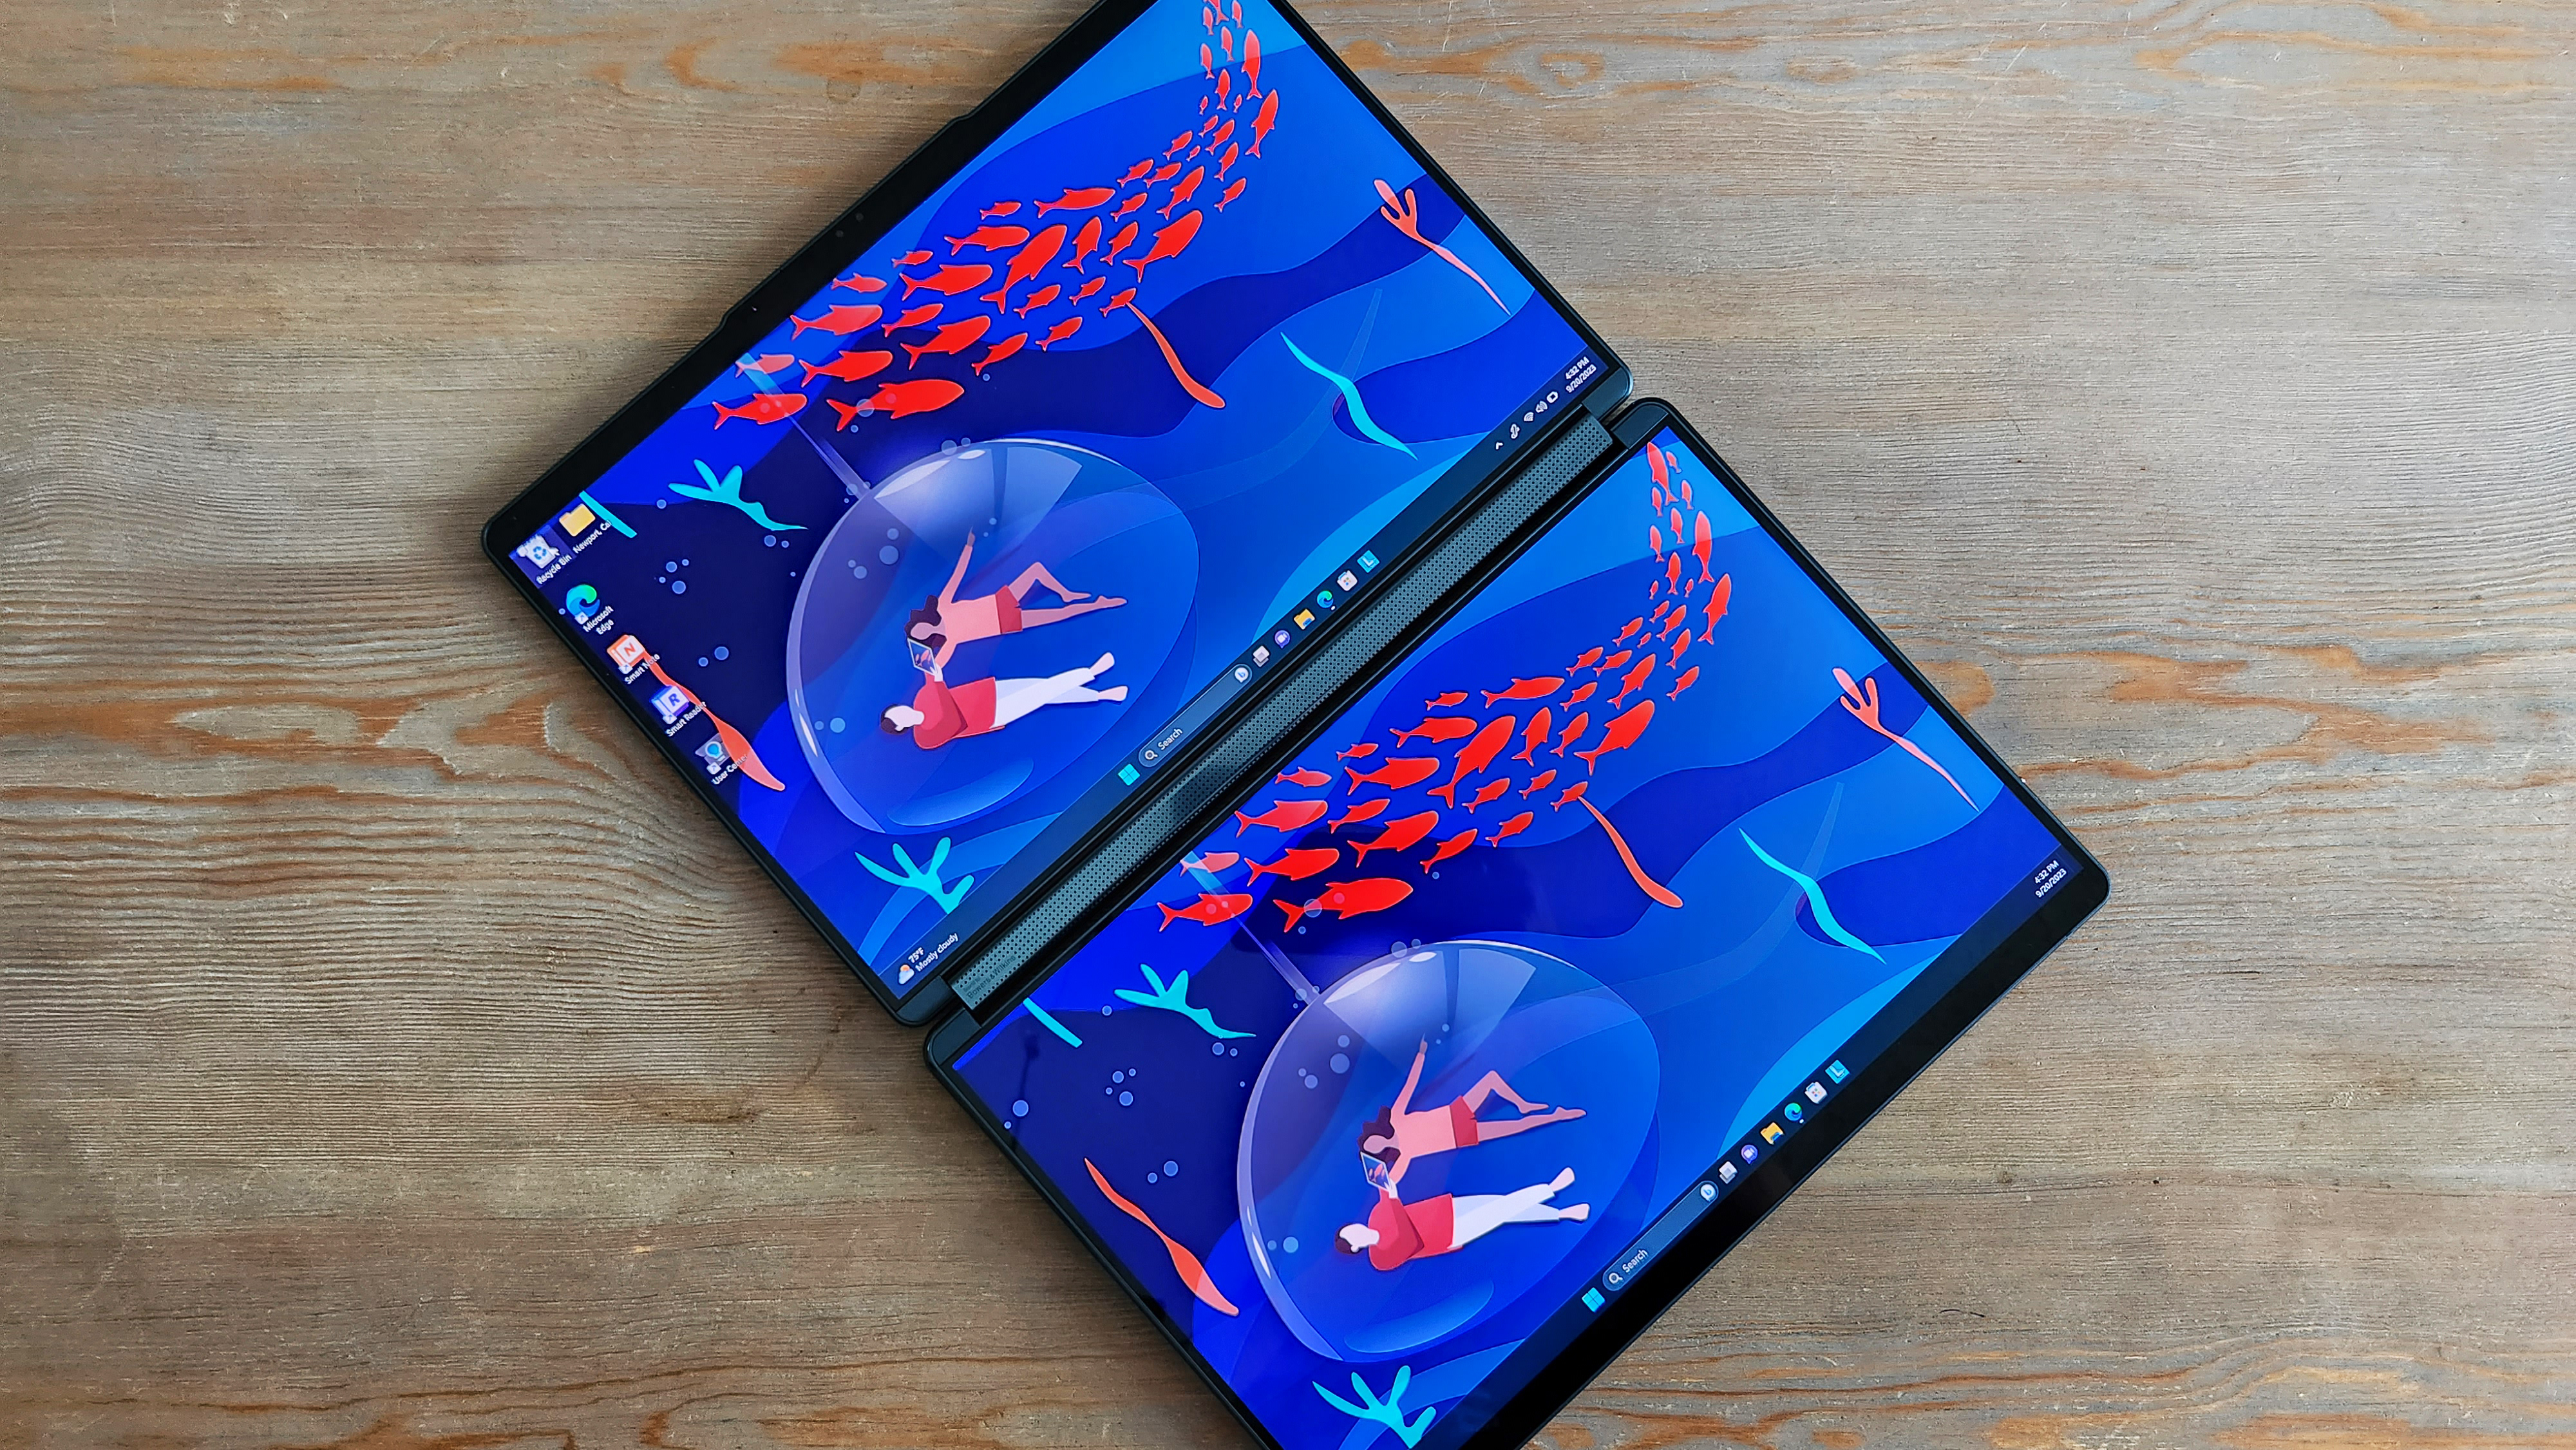 Notebook s dvoma obrazovkou zobrazuje farebné pozadie ležiace plochými pri drevenom povrchu